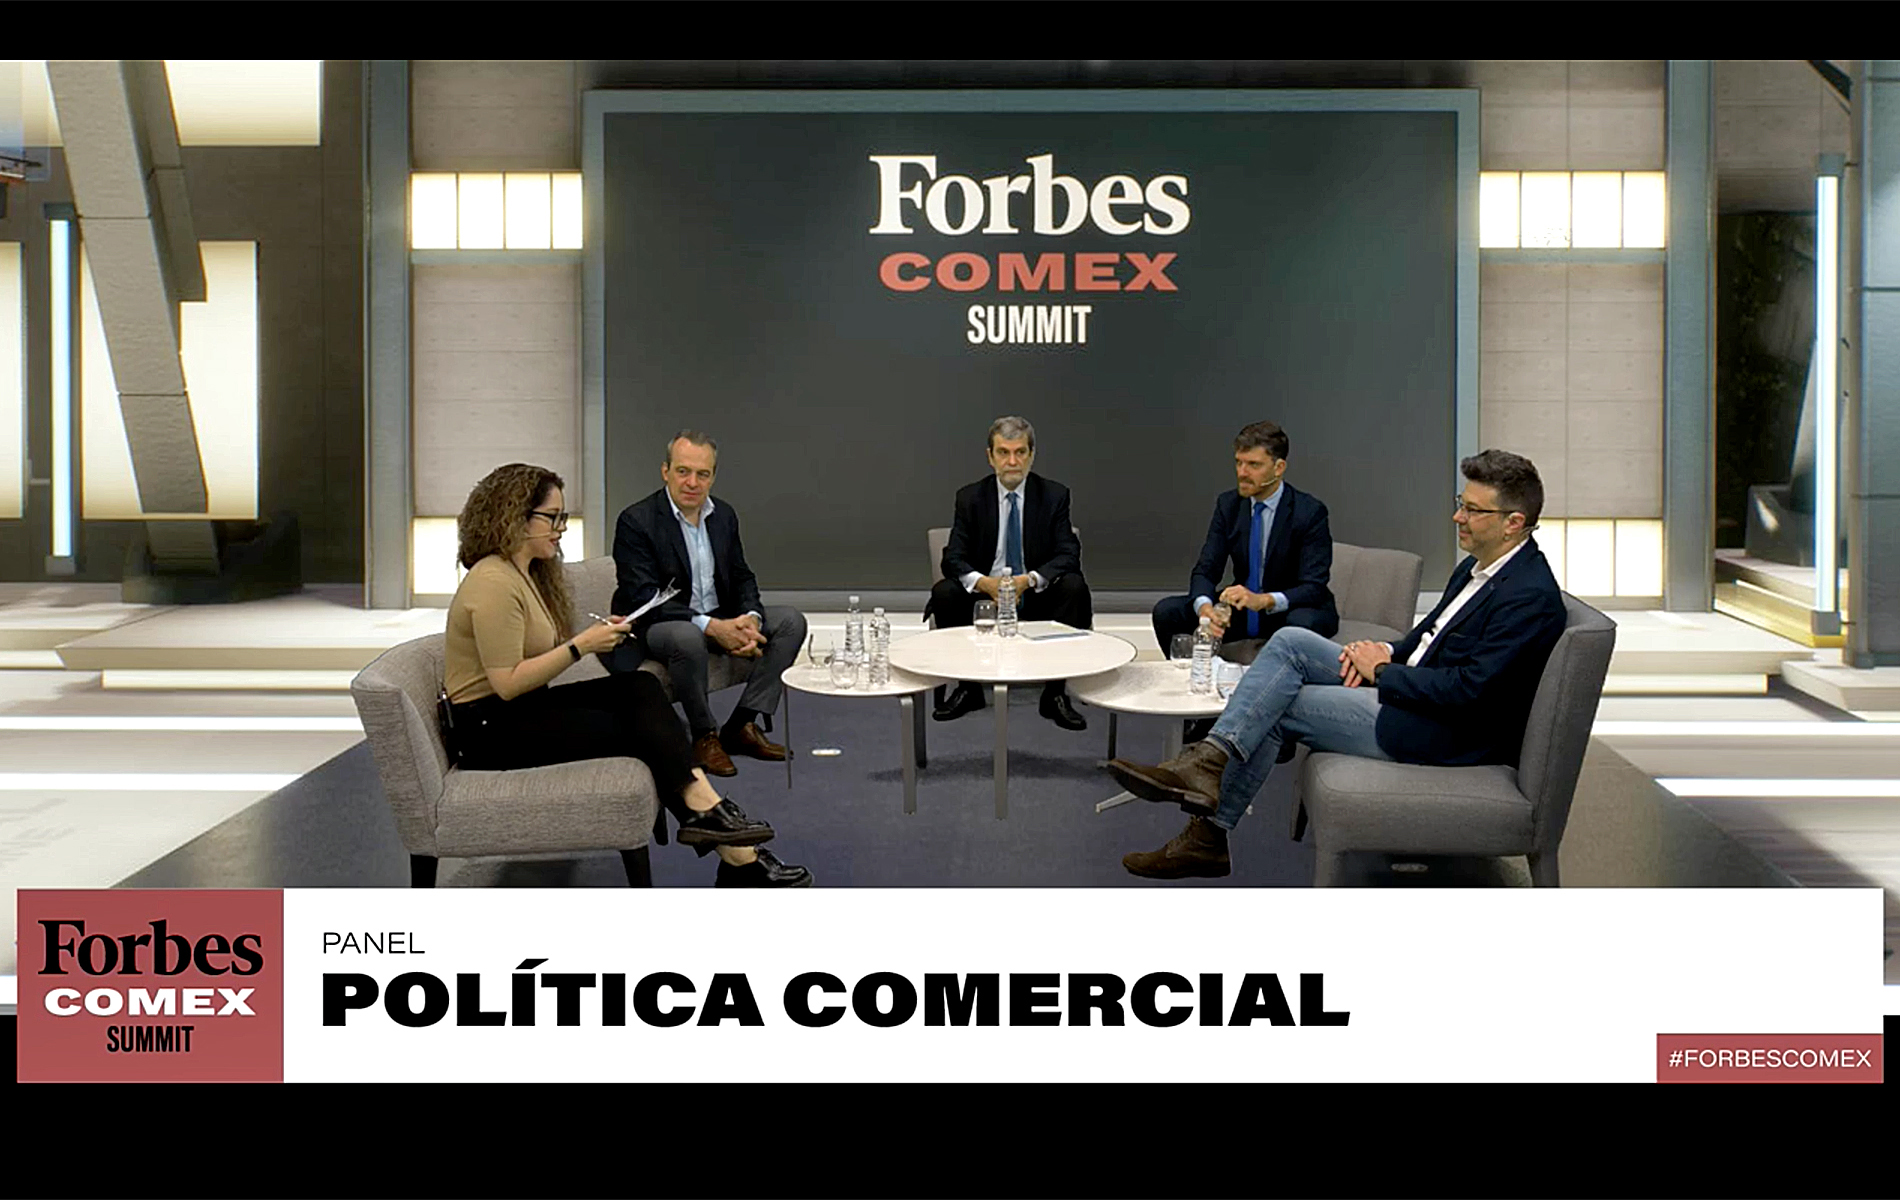 Política comercial, del concepto a la práctica - Forbes Argentina